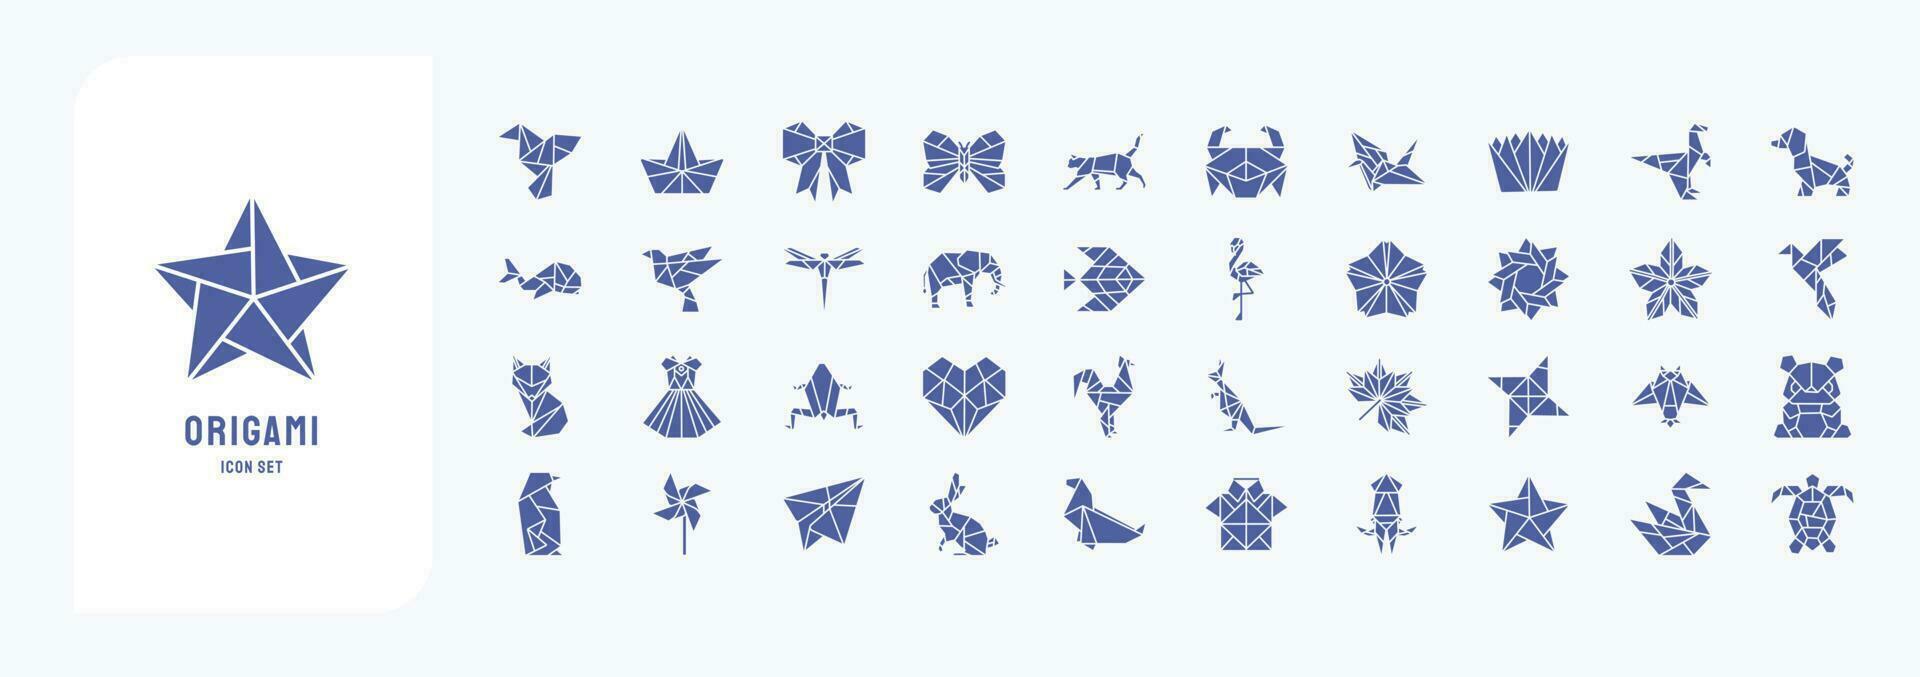 samling av ikoner relaterad till origami, Inklusive ikoner tycka om fågel, båt, fjäril, katt och Mer vektor